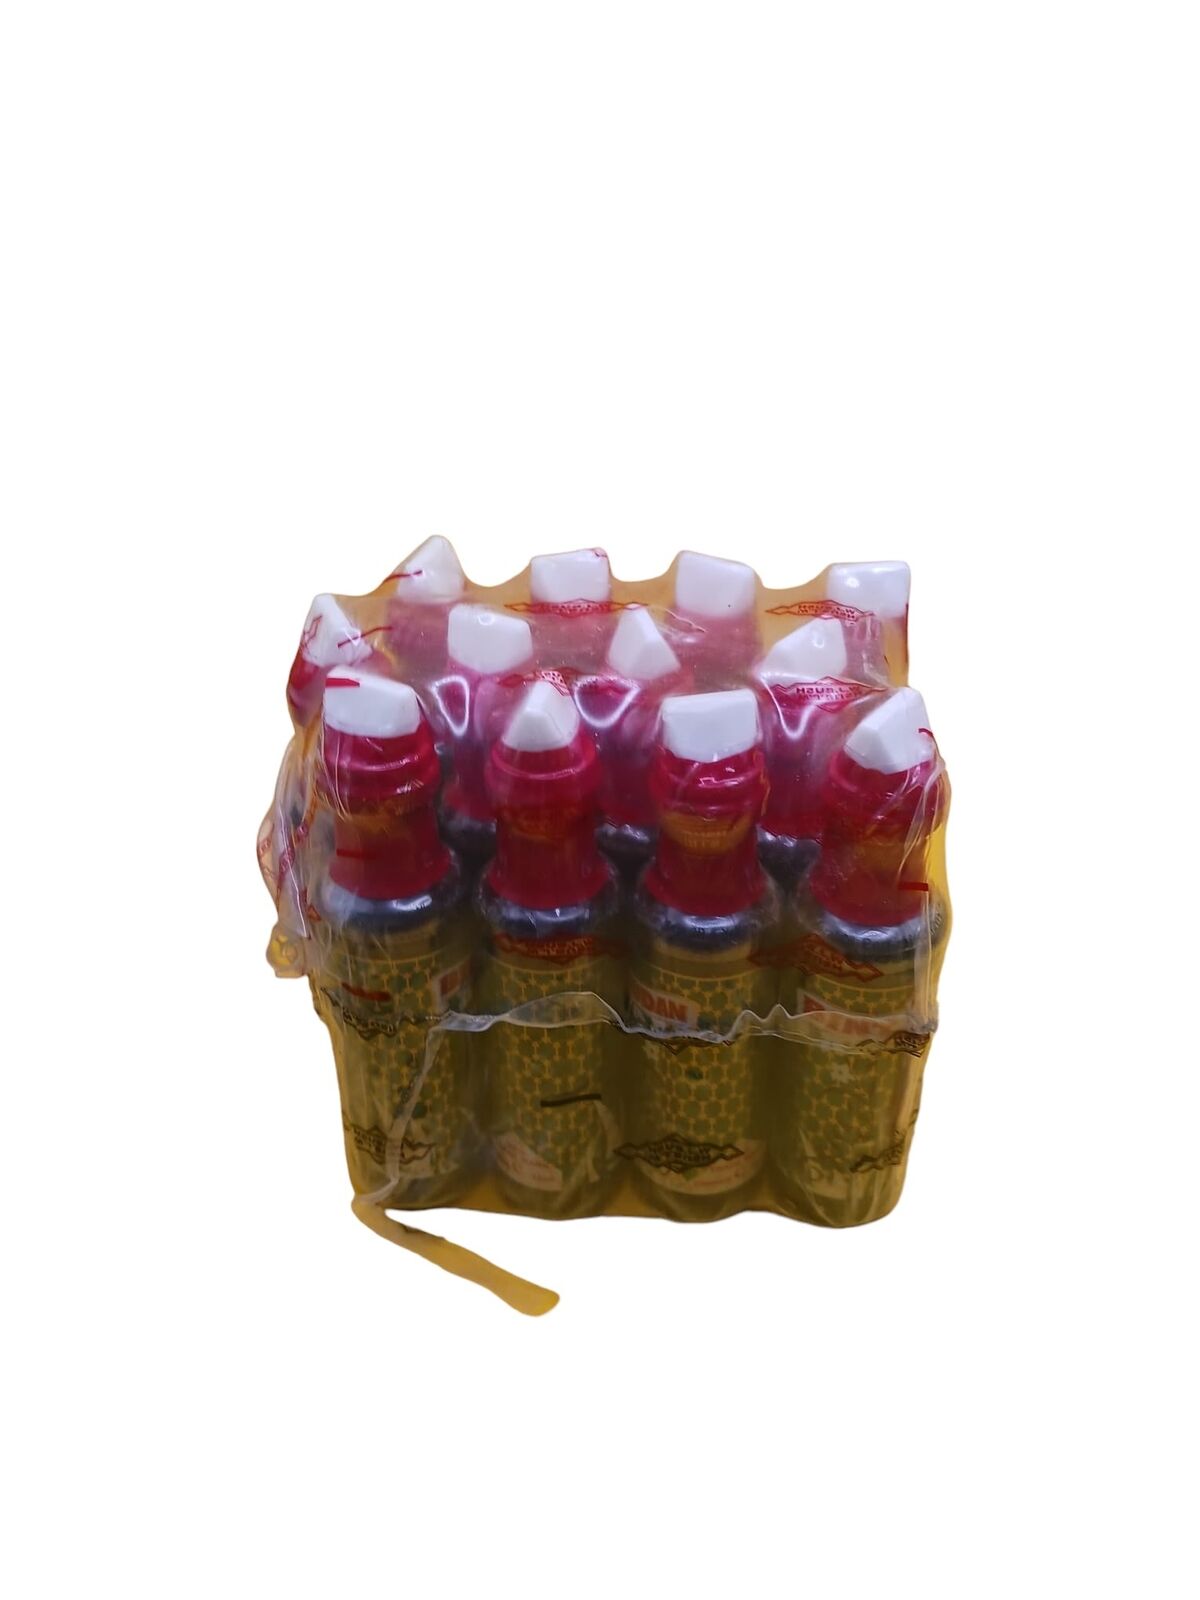 12 Bottles Bintu el Sudan Oil Perfume